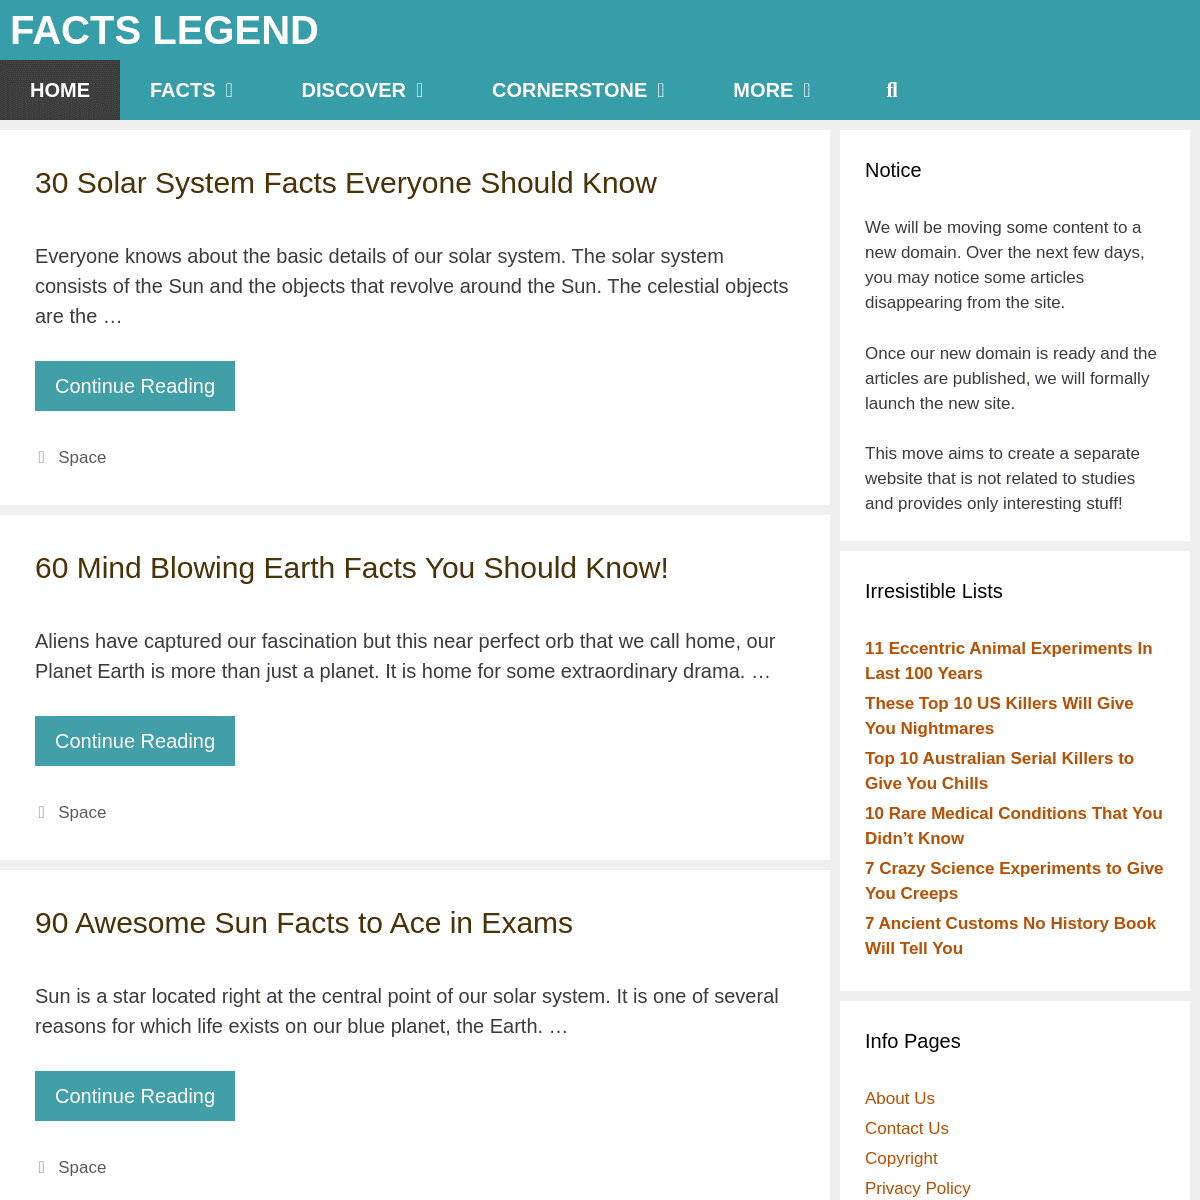 A complete backup of factslegend.org